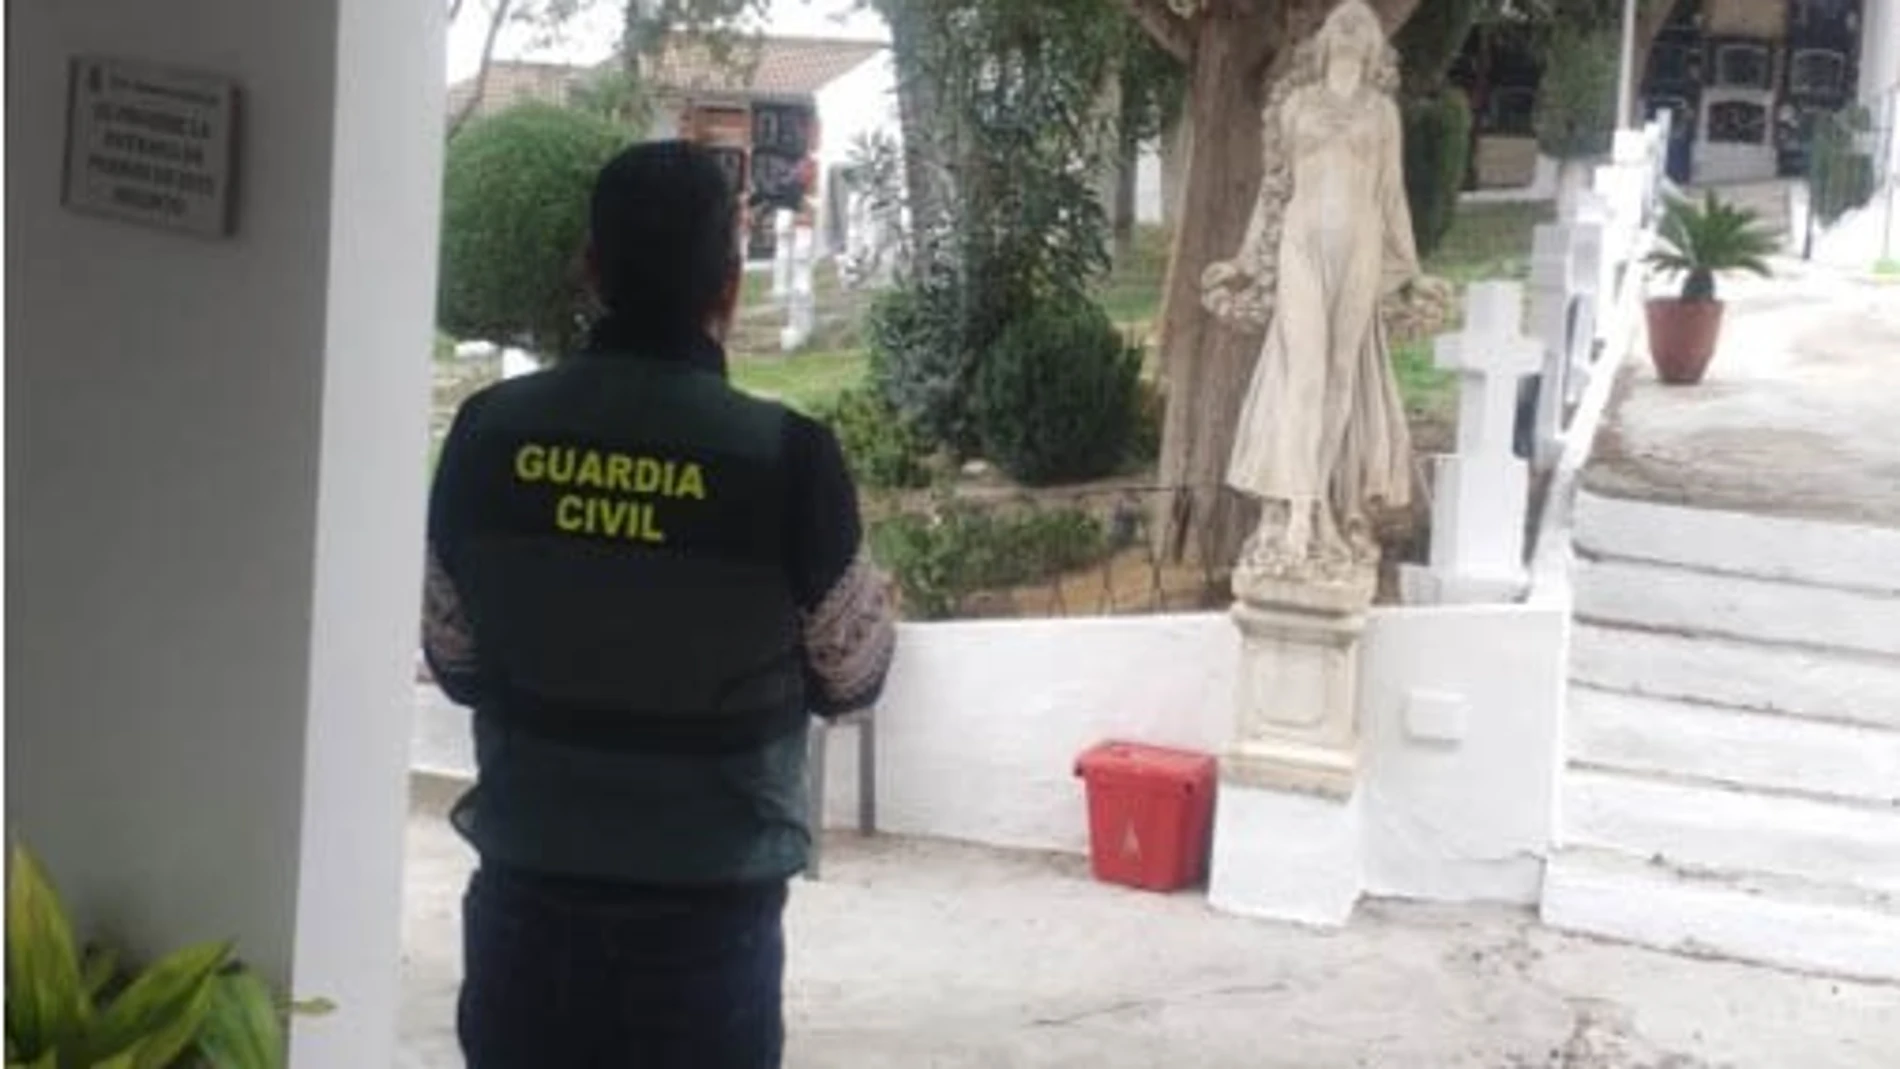 Agente en el cementerio de La Guardia, en Jaén. GUARDIA CIVIL